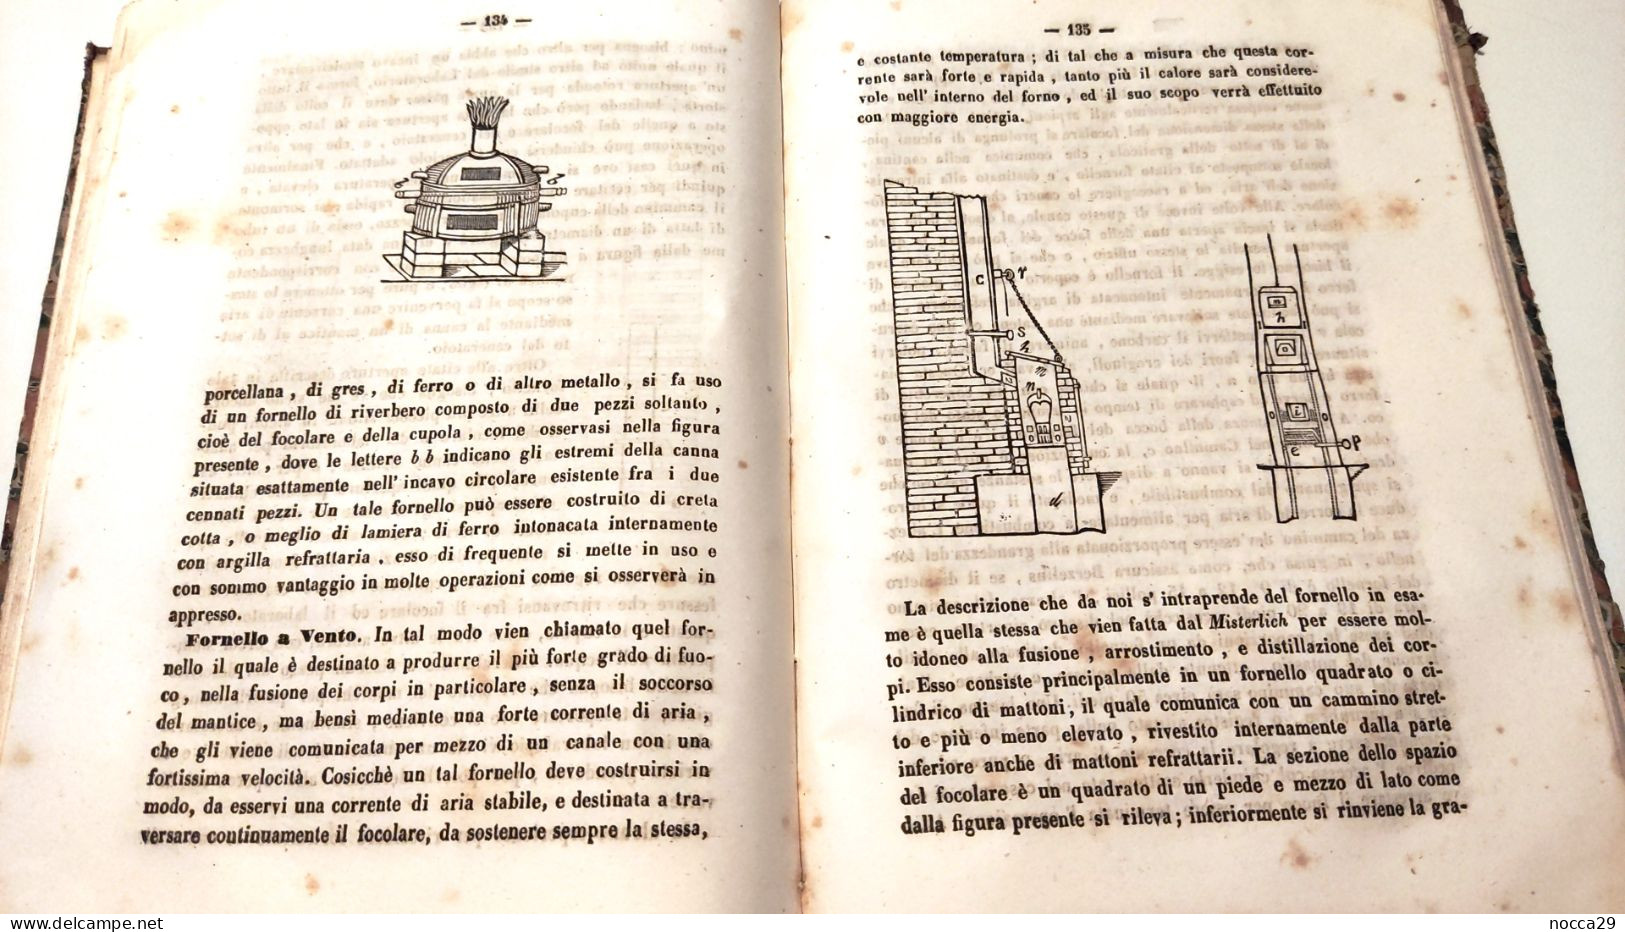 LIBRO - ELEMENTI DI FARMACIA CHIMICA E GALENICA - 1850 - TOMMASO PUNZO - EDITORE GIUSEPPE CARLUCCIO  NAPOLI (STAMP337)